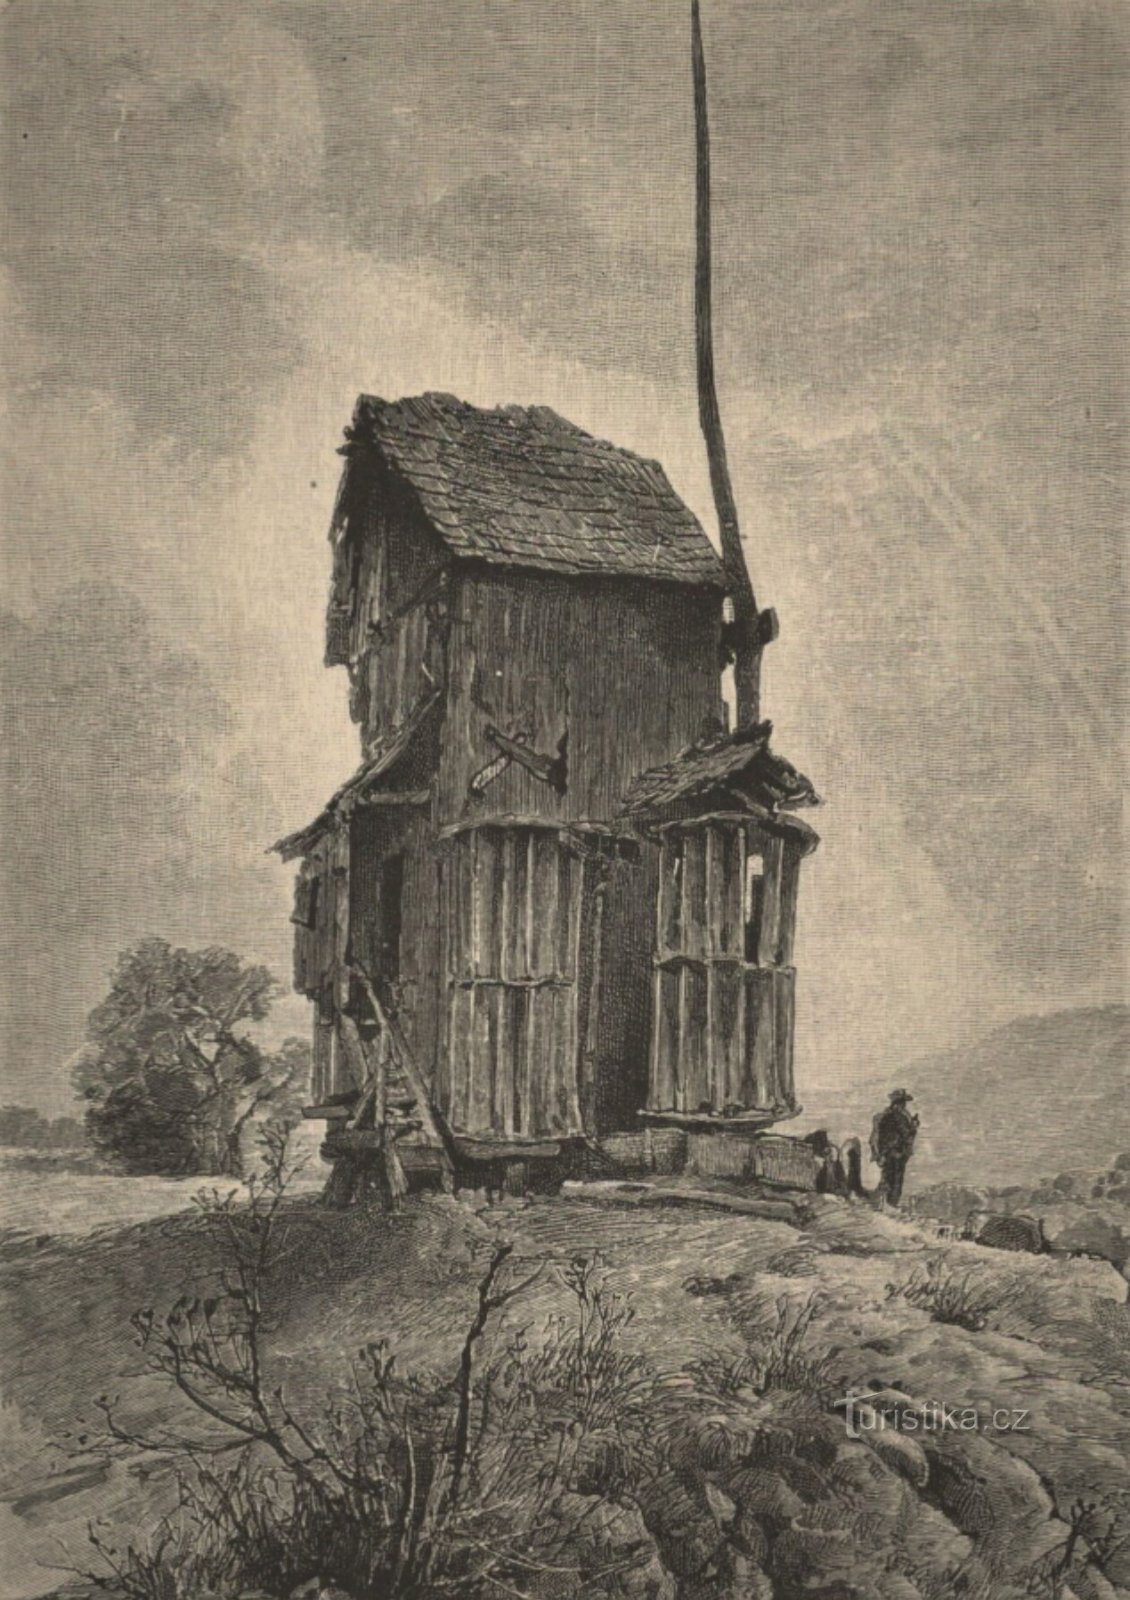 Dibujo del molino de viento de Doblnice de la segunda mitad del siglo XIX.